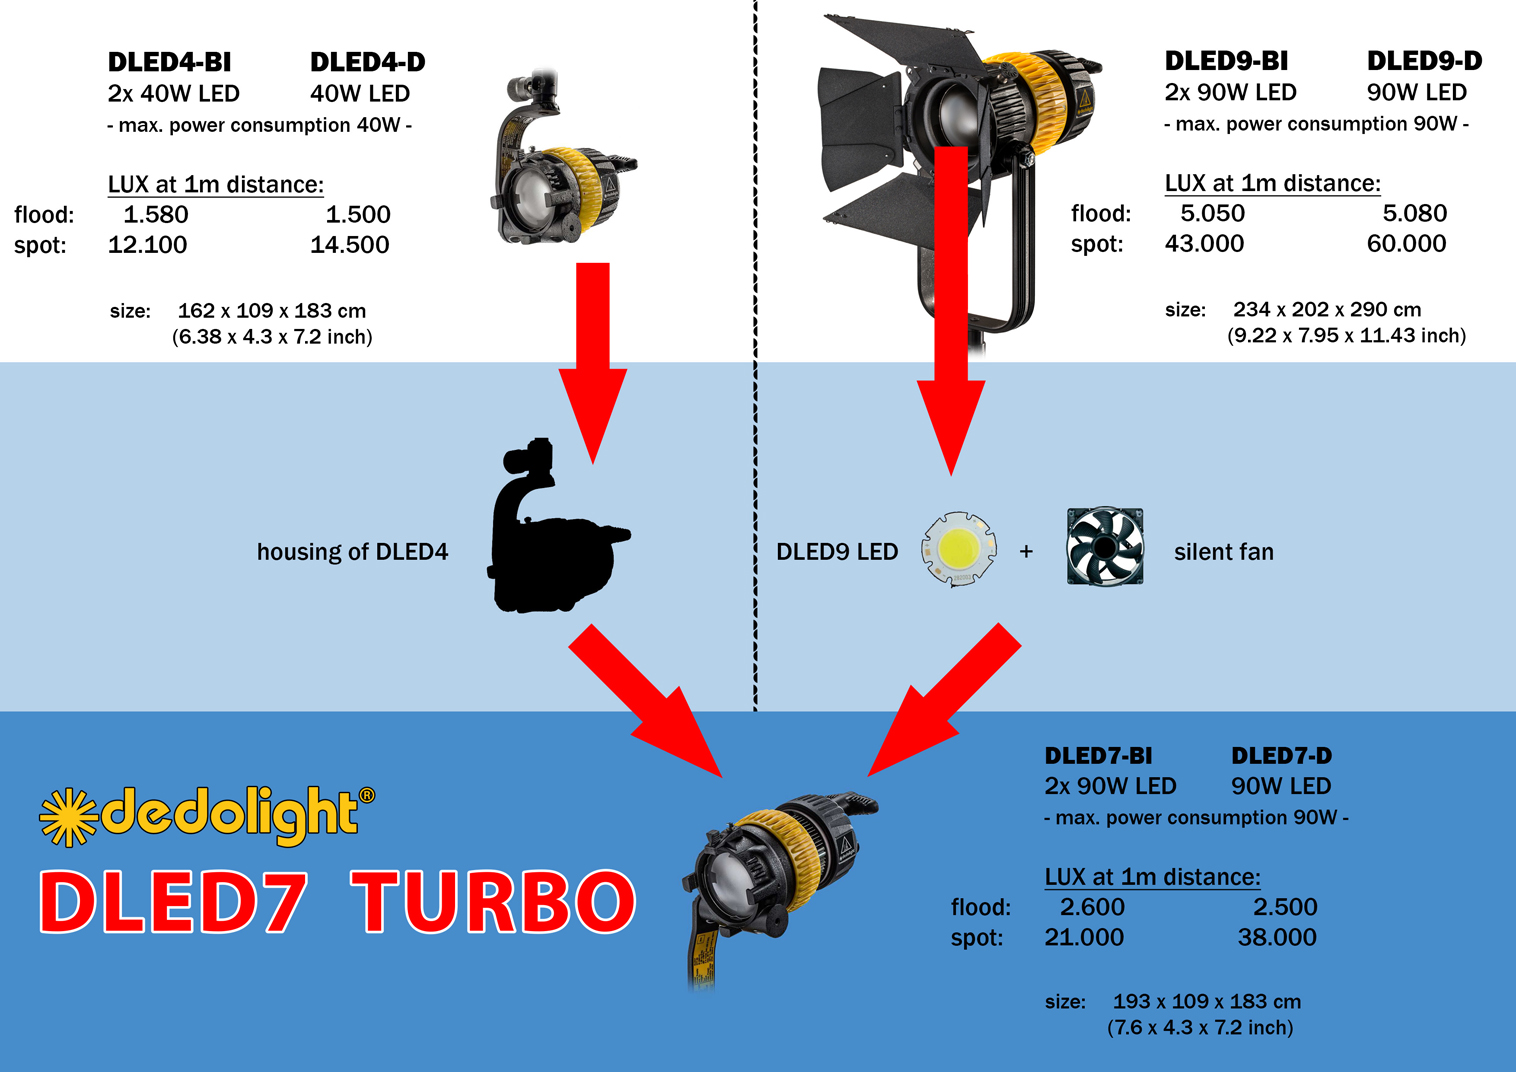 Dedolight KLT7-3-Bi Hard Case Lichtkit mit 3 DLED7 Bi-Color Turbo Leuchten